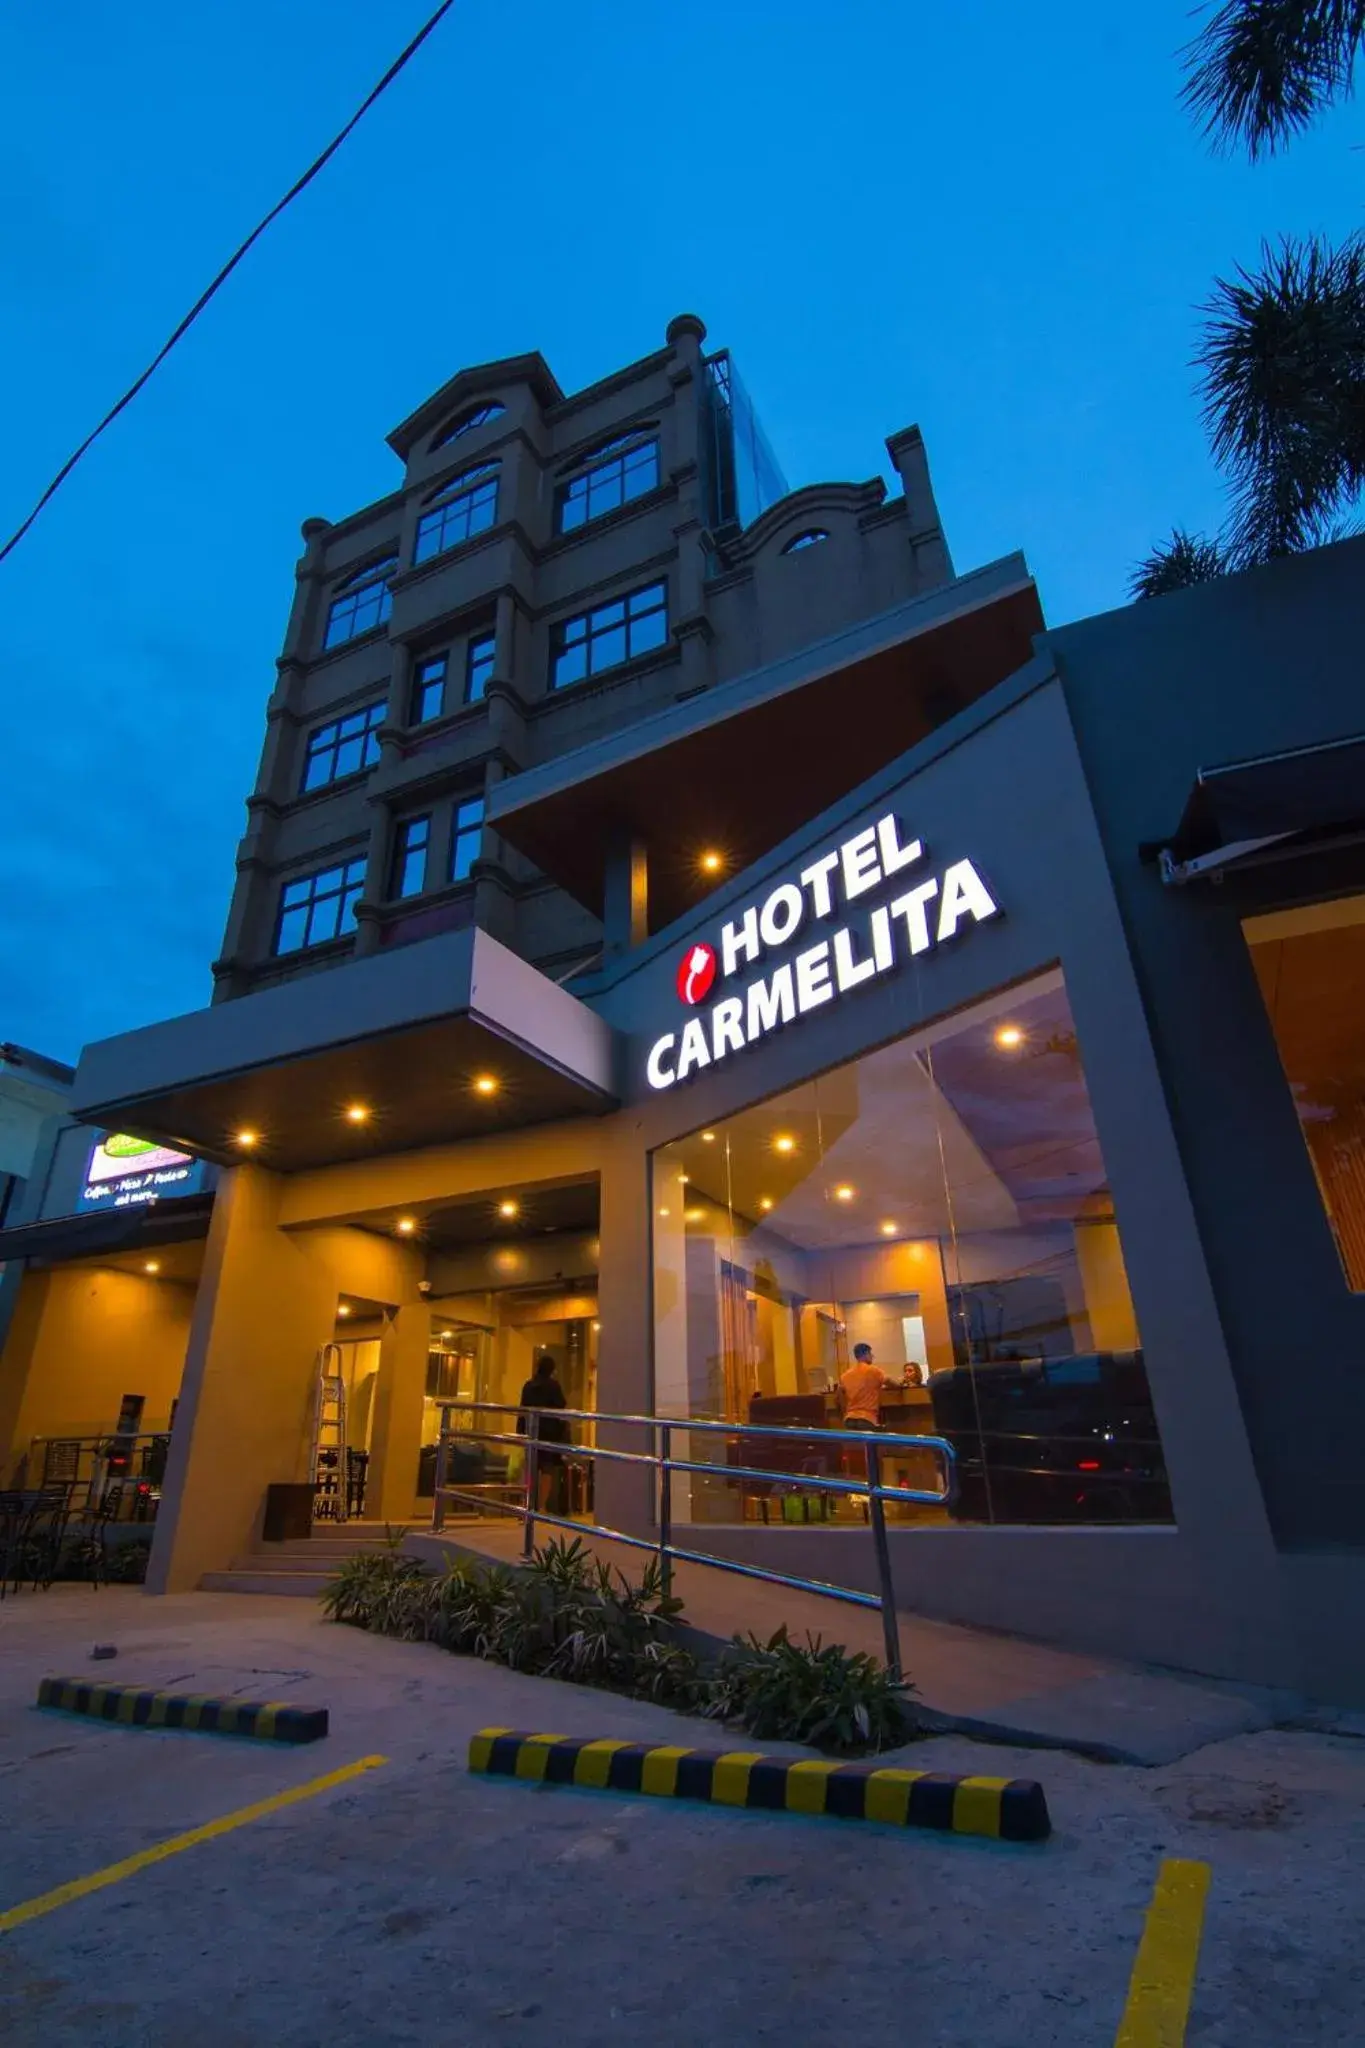 Property building in Hotel Carmelita